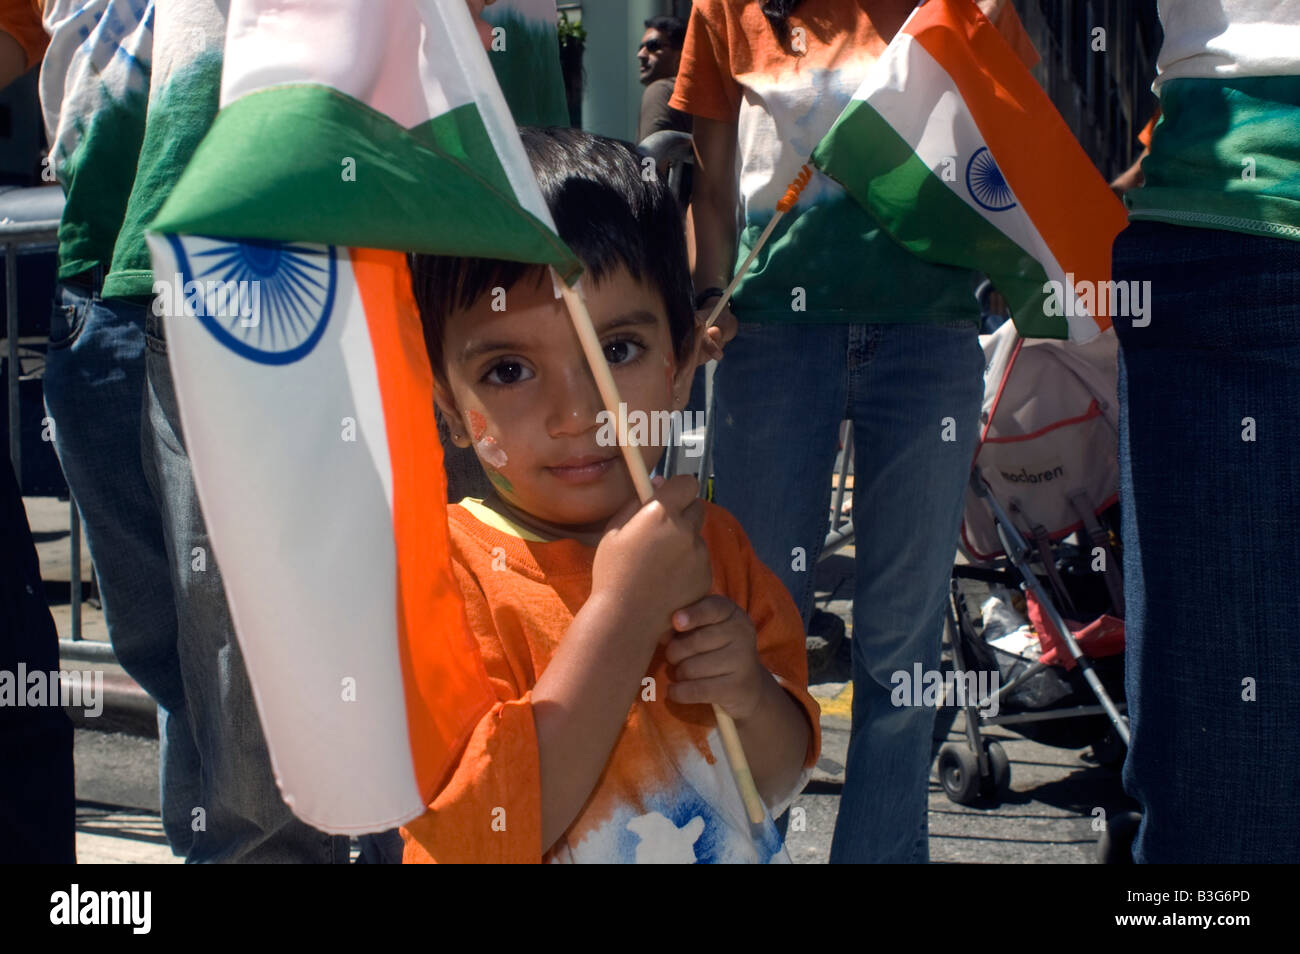 Les Indiens américains de tri state zone autour de New York regardez l'Indian Independence Day Parade Banque D'Images